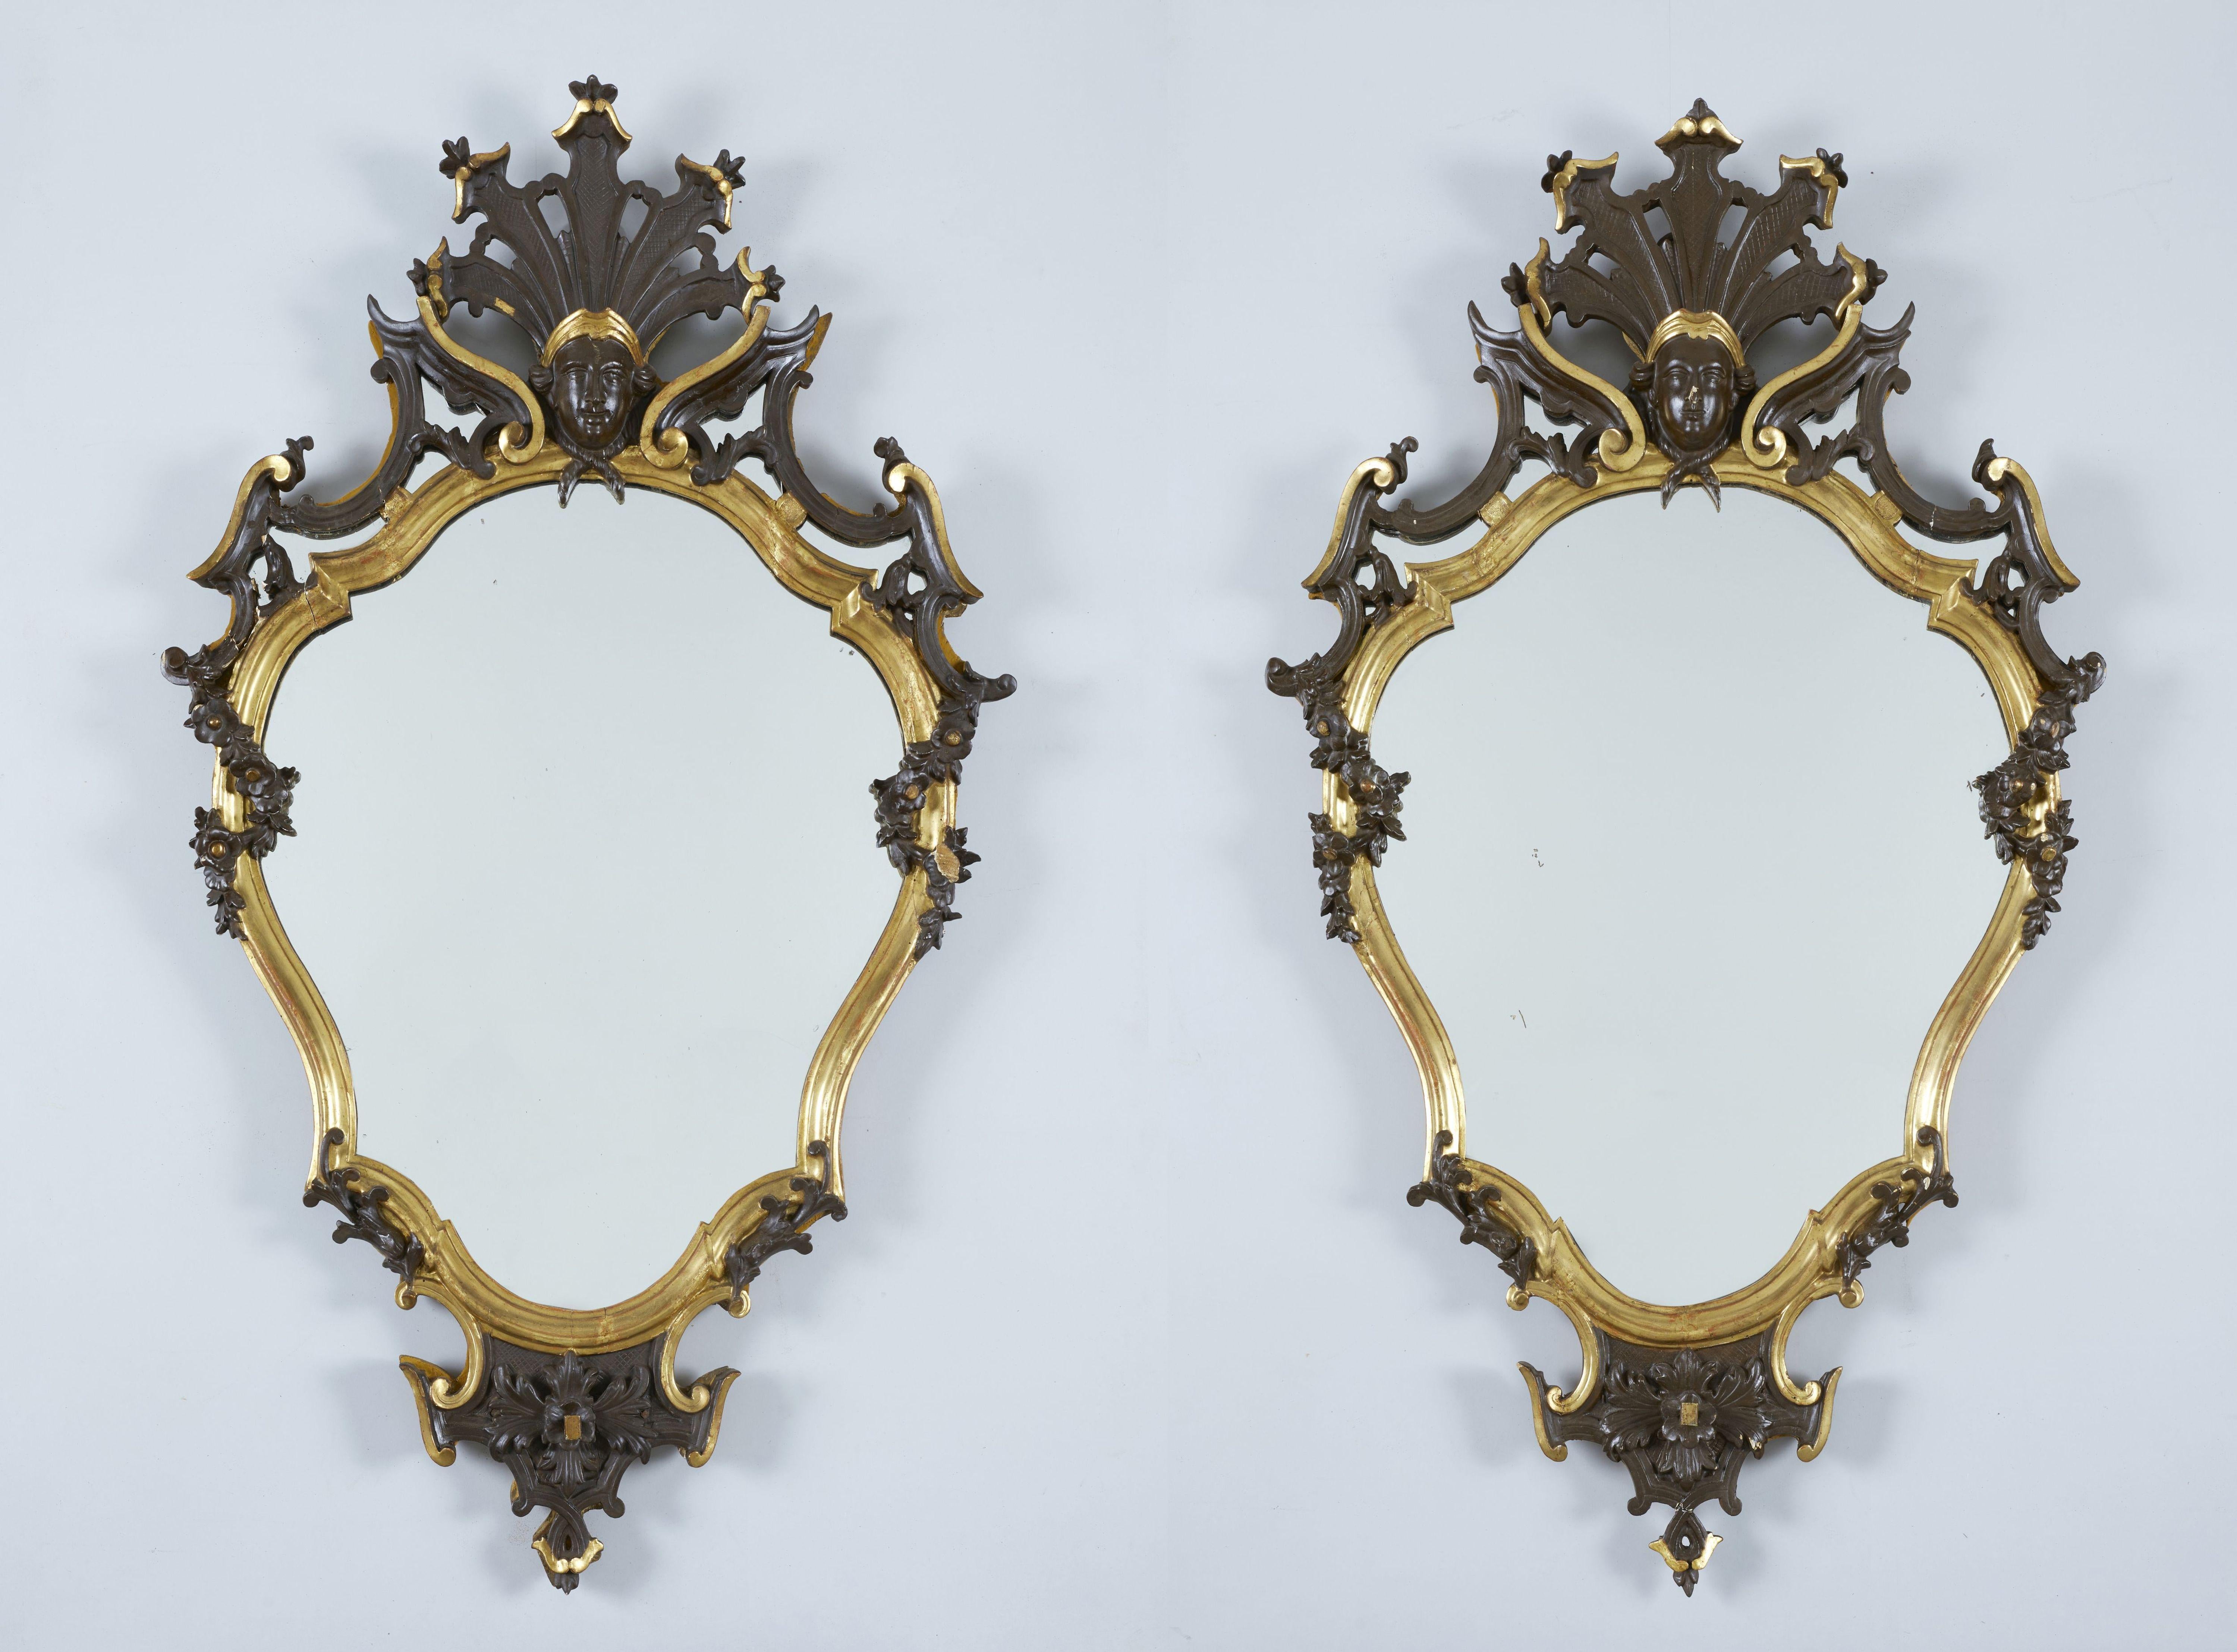 Paar lombardische Louis-XVI-Spiegel aus der zweiten Hälfte des 18. Jahrhunderts, 116 x 65 cm groß, mit originalem Quecksilberglas.

Dieses wunderbare und vor allem gut gearbeitete Spiegelpaar zeigt den unverwechselbaren Stil der lombardischen Kunst,